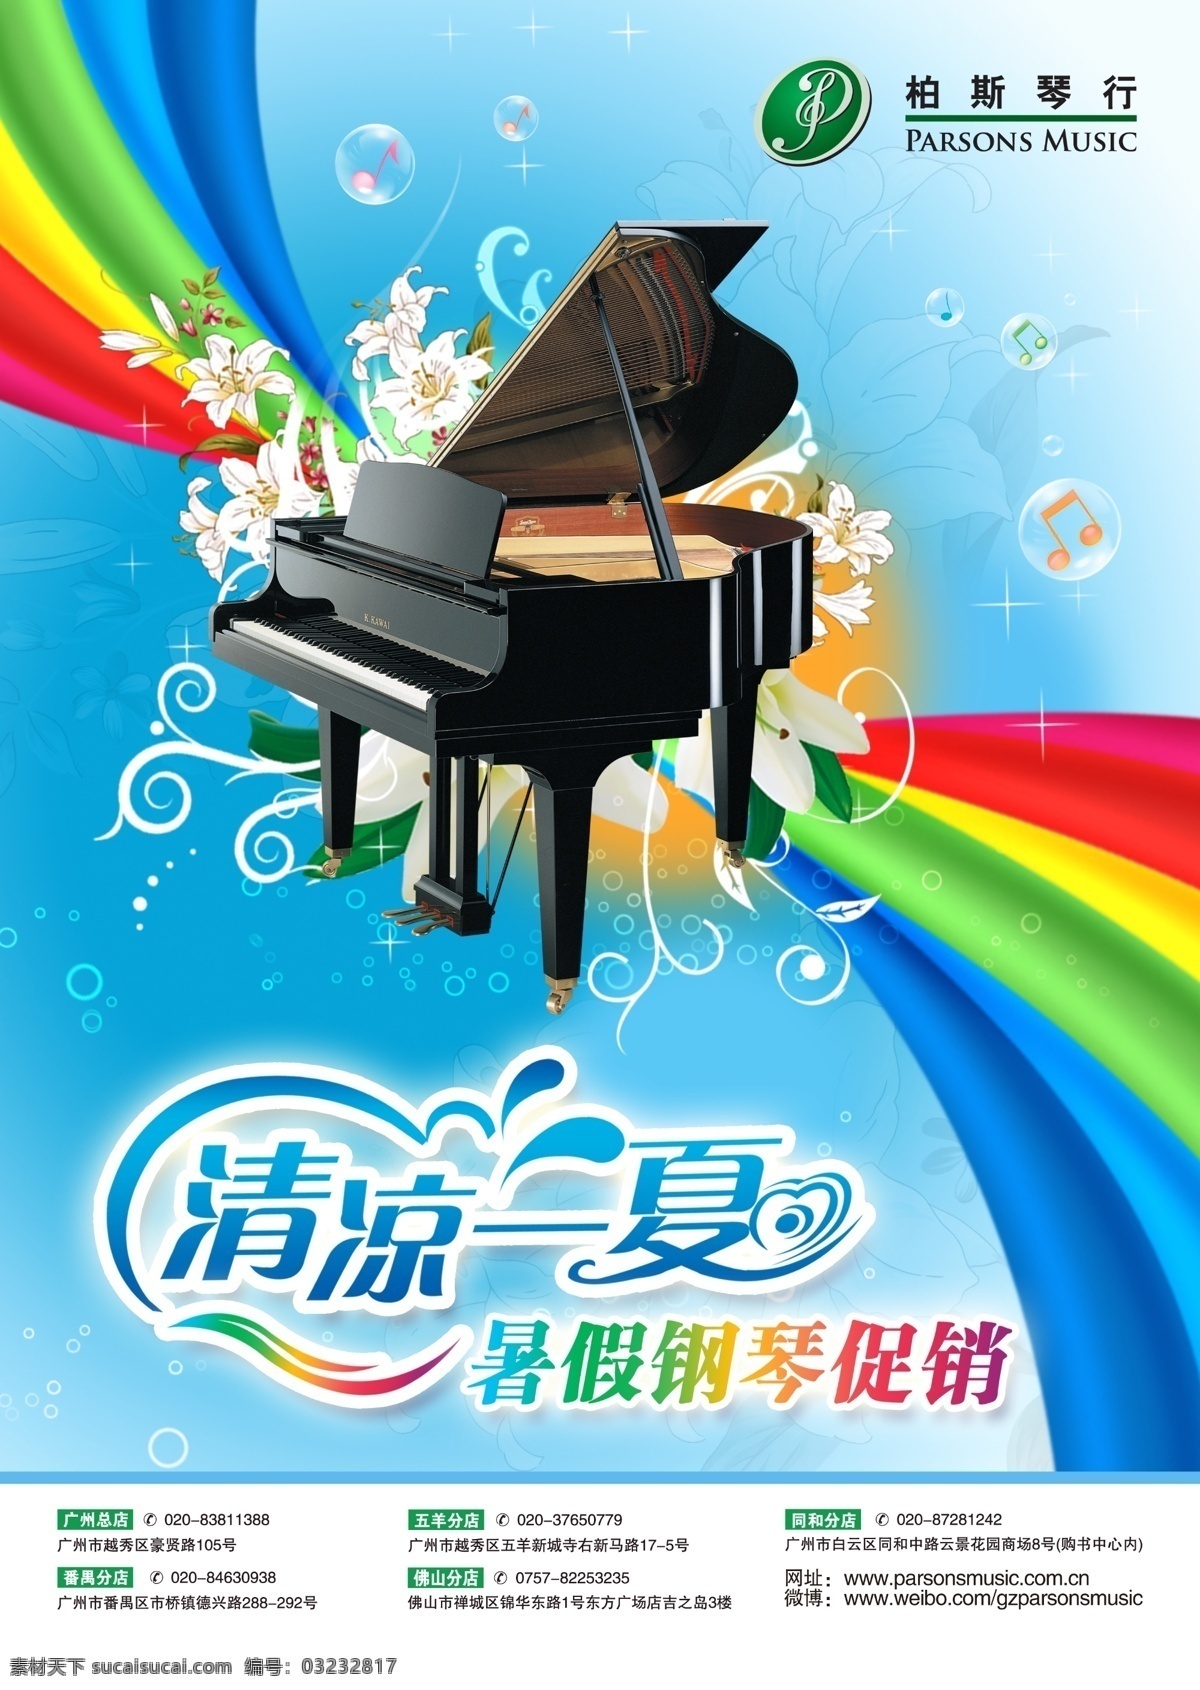 暑期促销海报 暑期 夏天 清凉 钢琴 清凉一夏 彩虹 线条 气泡 广告设计模板 源文件